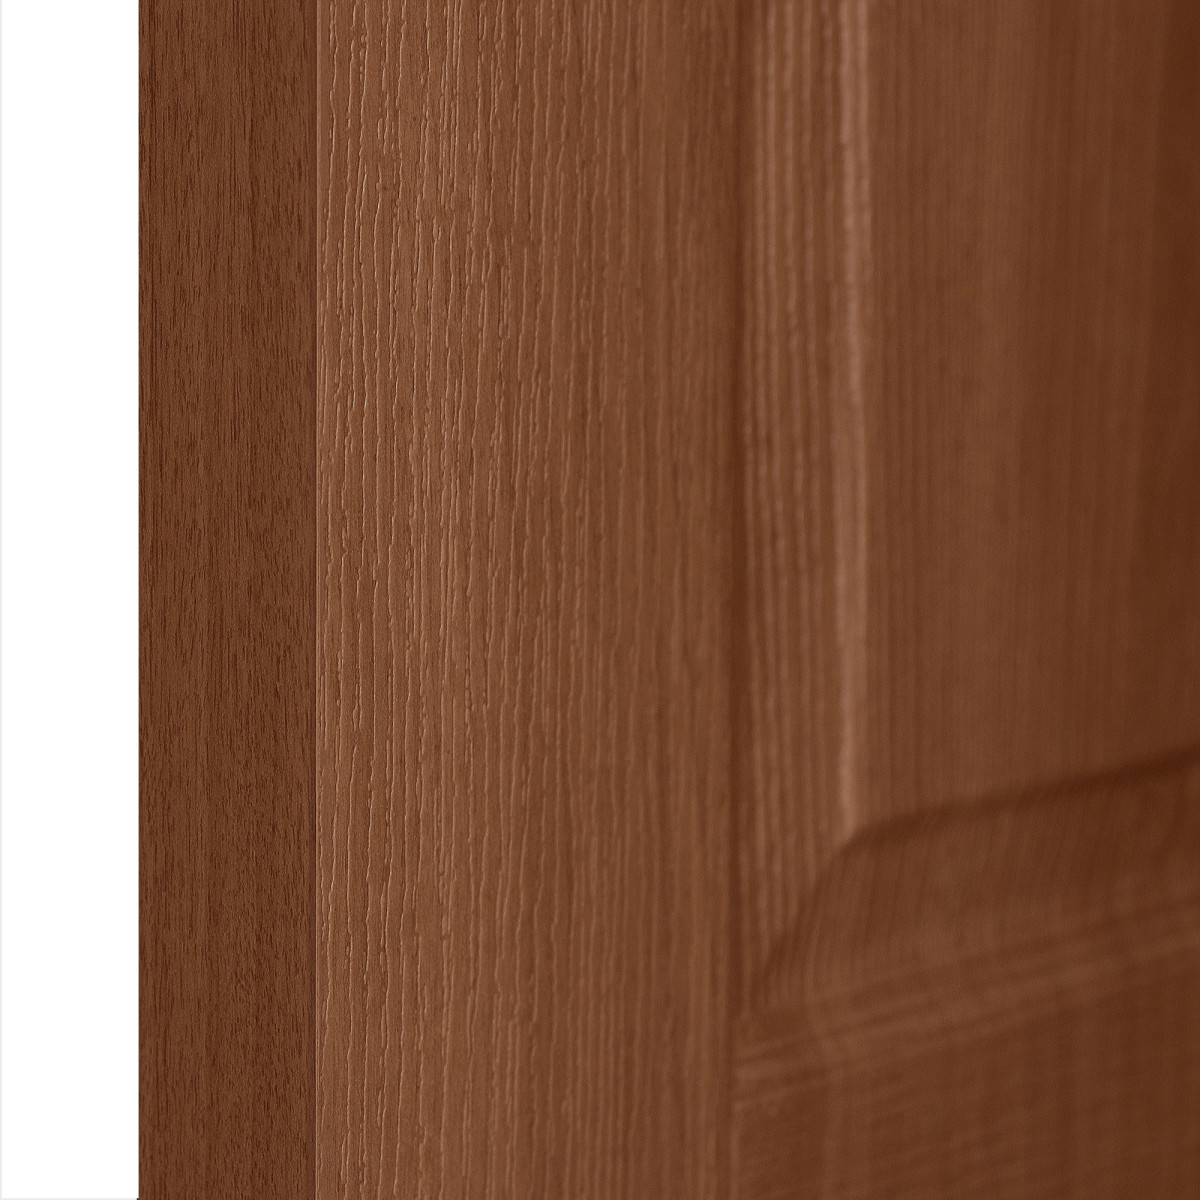 Дверь межкомнатная глухая ПВХ Антик 80x200 см цвет итальянский орех